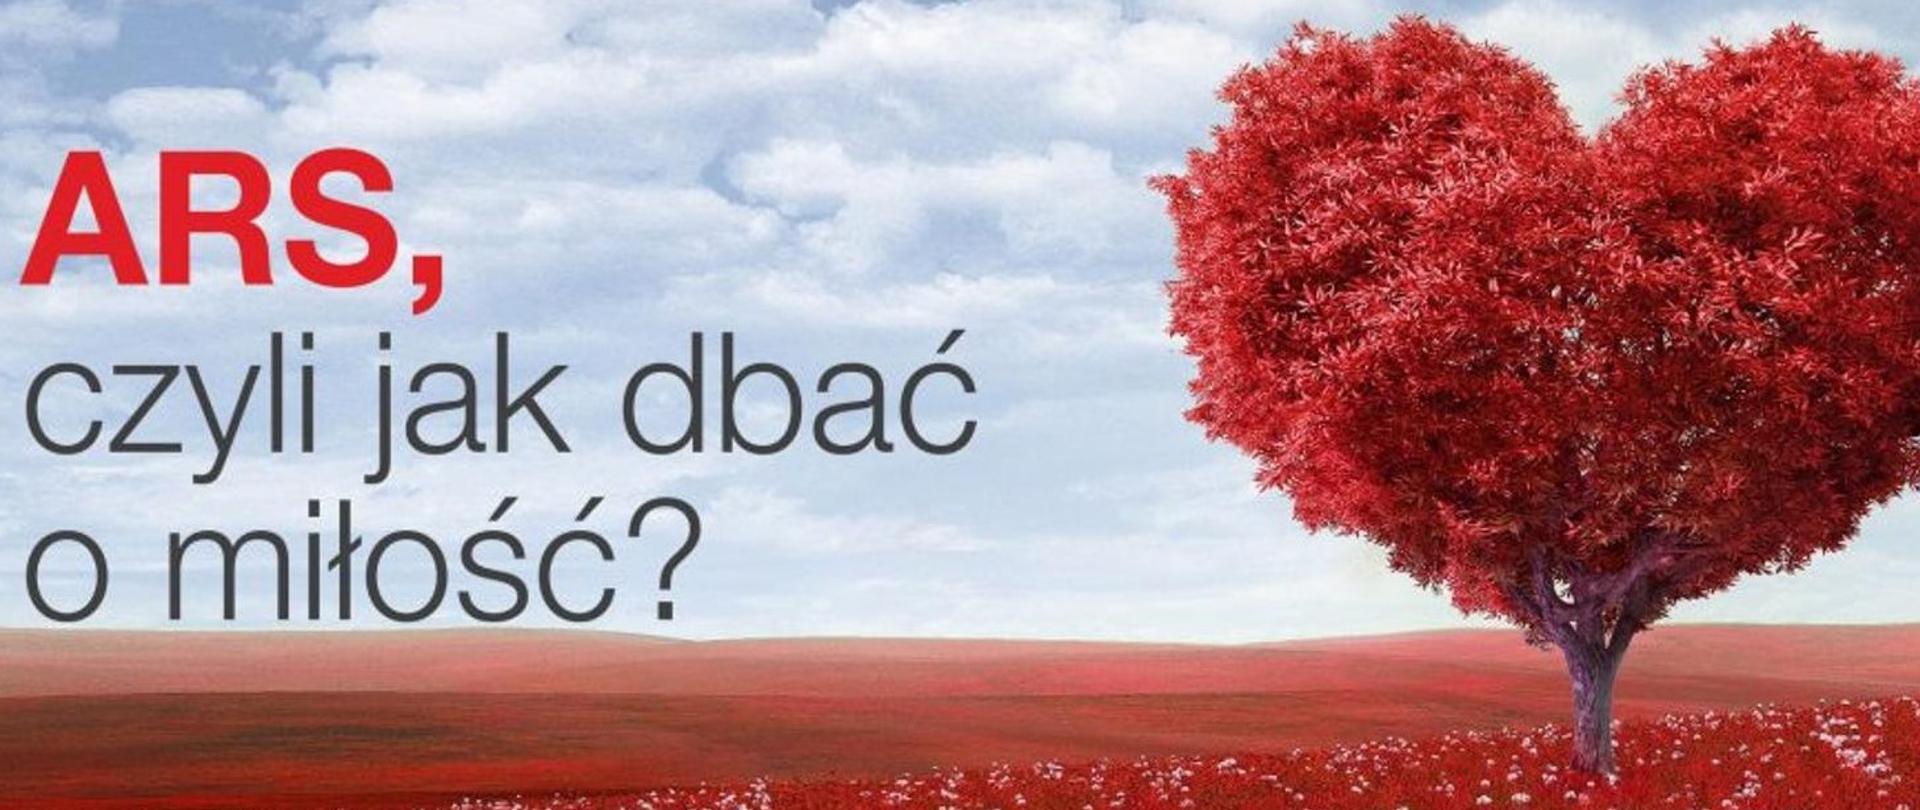 Grafika przedstawia napis „ARS, czyli jak dbać o miłość?” na tle łąki z drzewem pokrytym czerwonym listowiem w kształcie serca.